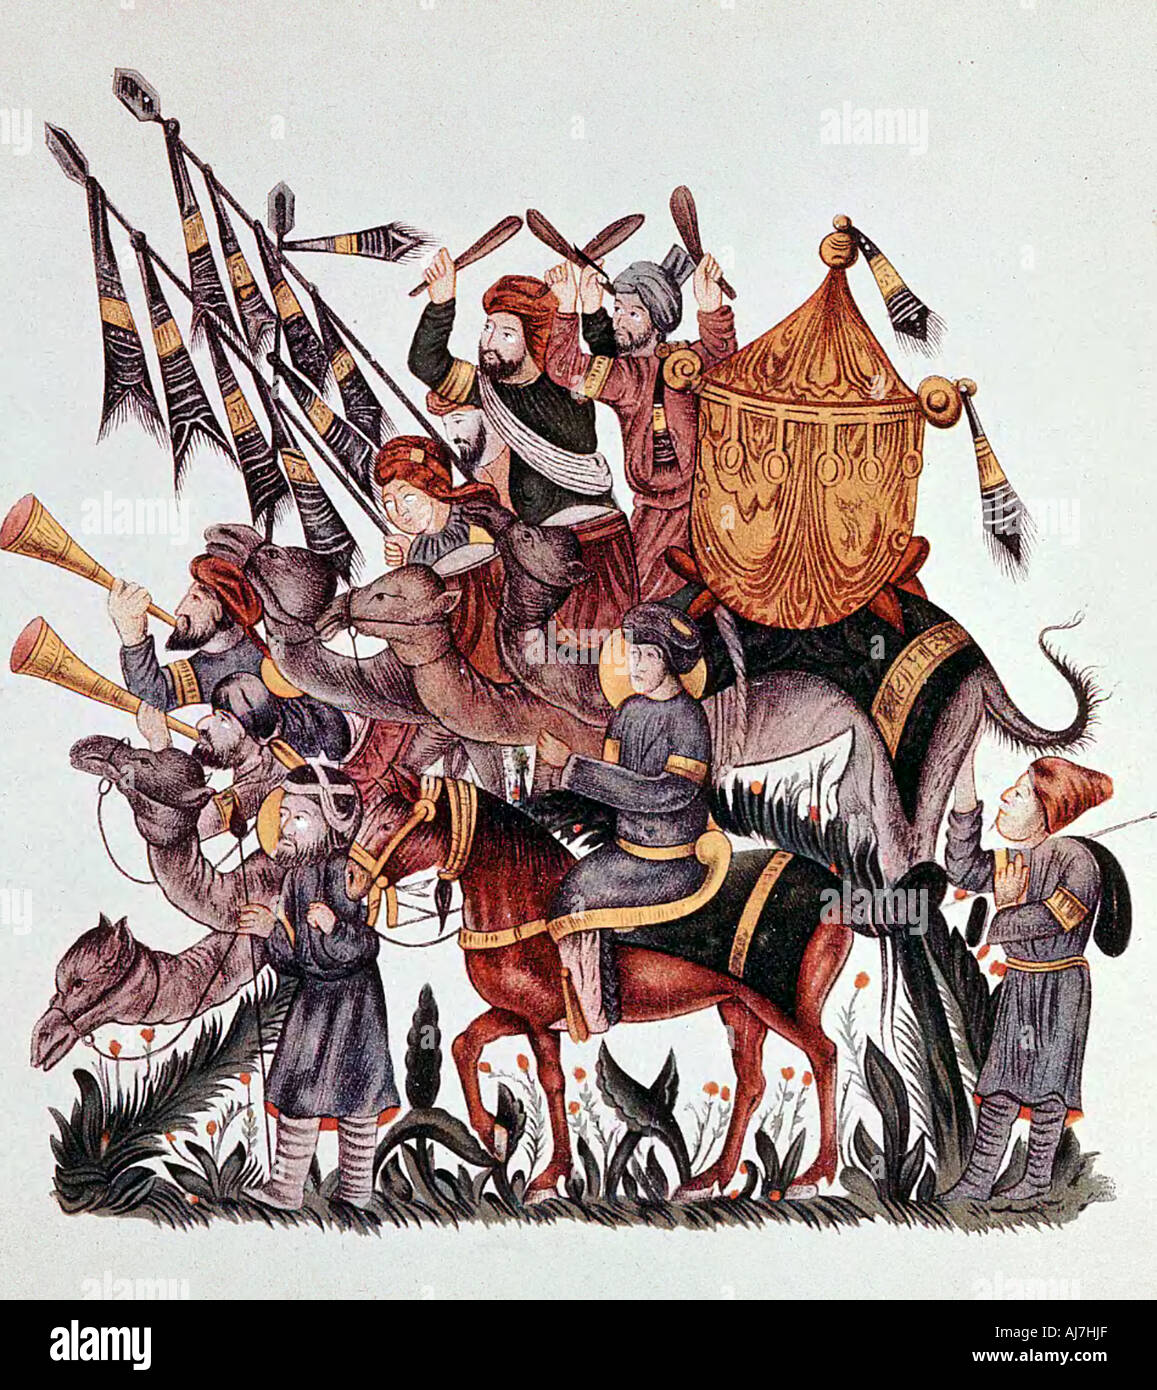 Alfieri, tamburini e trombettieri di un esercito di saraceni, del XIII secolo. Artista: sconosciuto Foto Stock